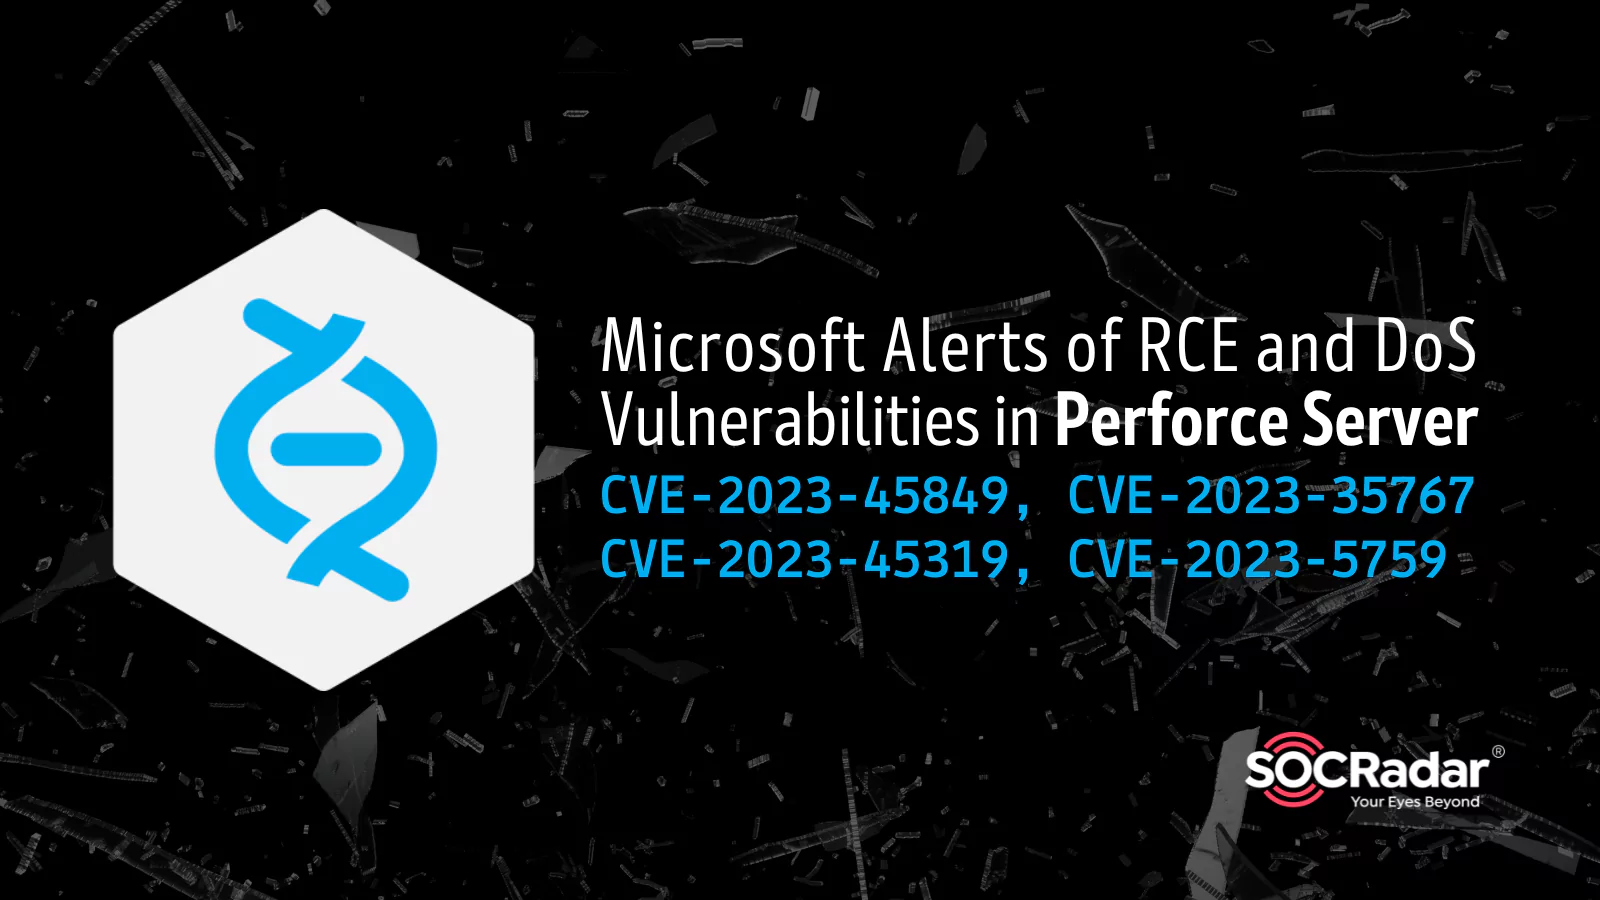 SOCRadar® Cyber Intelligence Inc. | Microsoft Alerts of RCE and DoS Vulnerabilities in Perforce Server: CVE-2023-45849, CVE-2023-35767, CVE-2023-45319, CVE-2023-5759